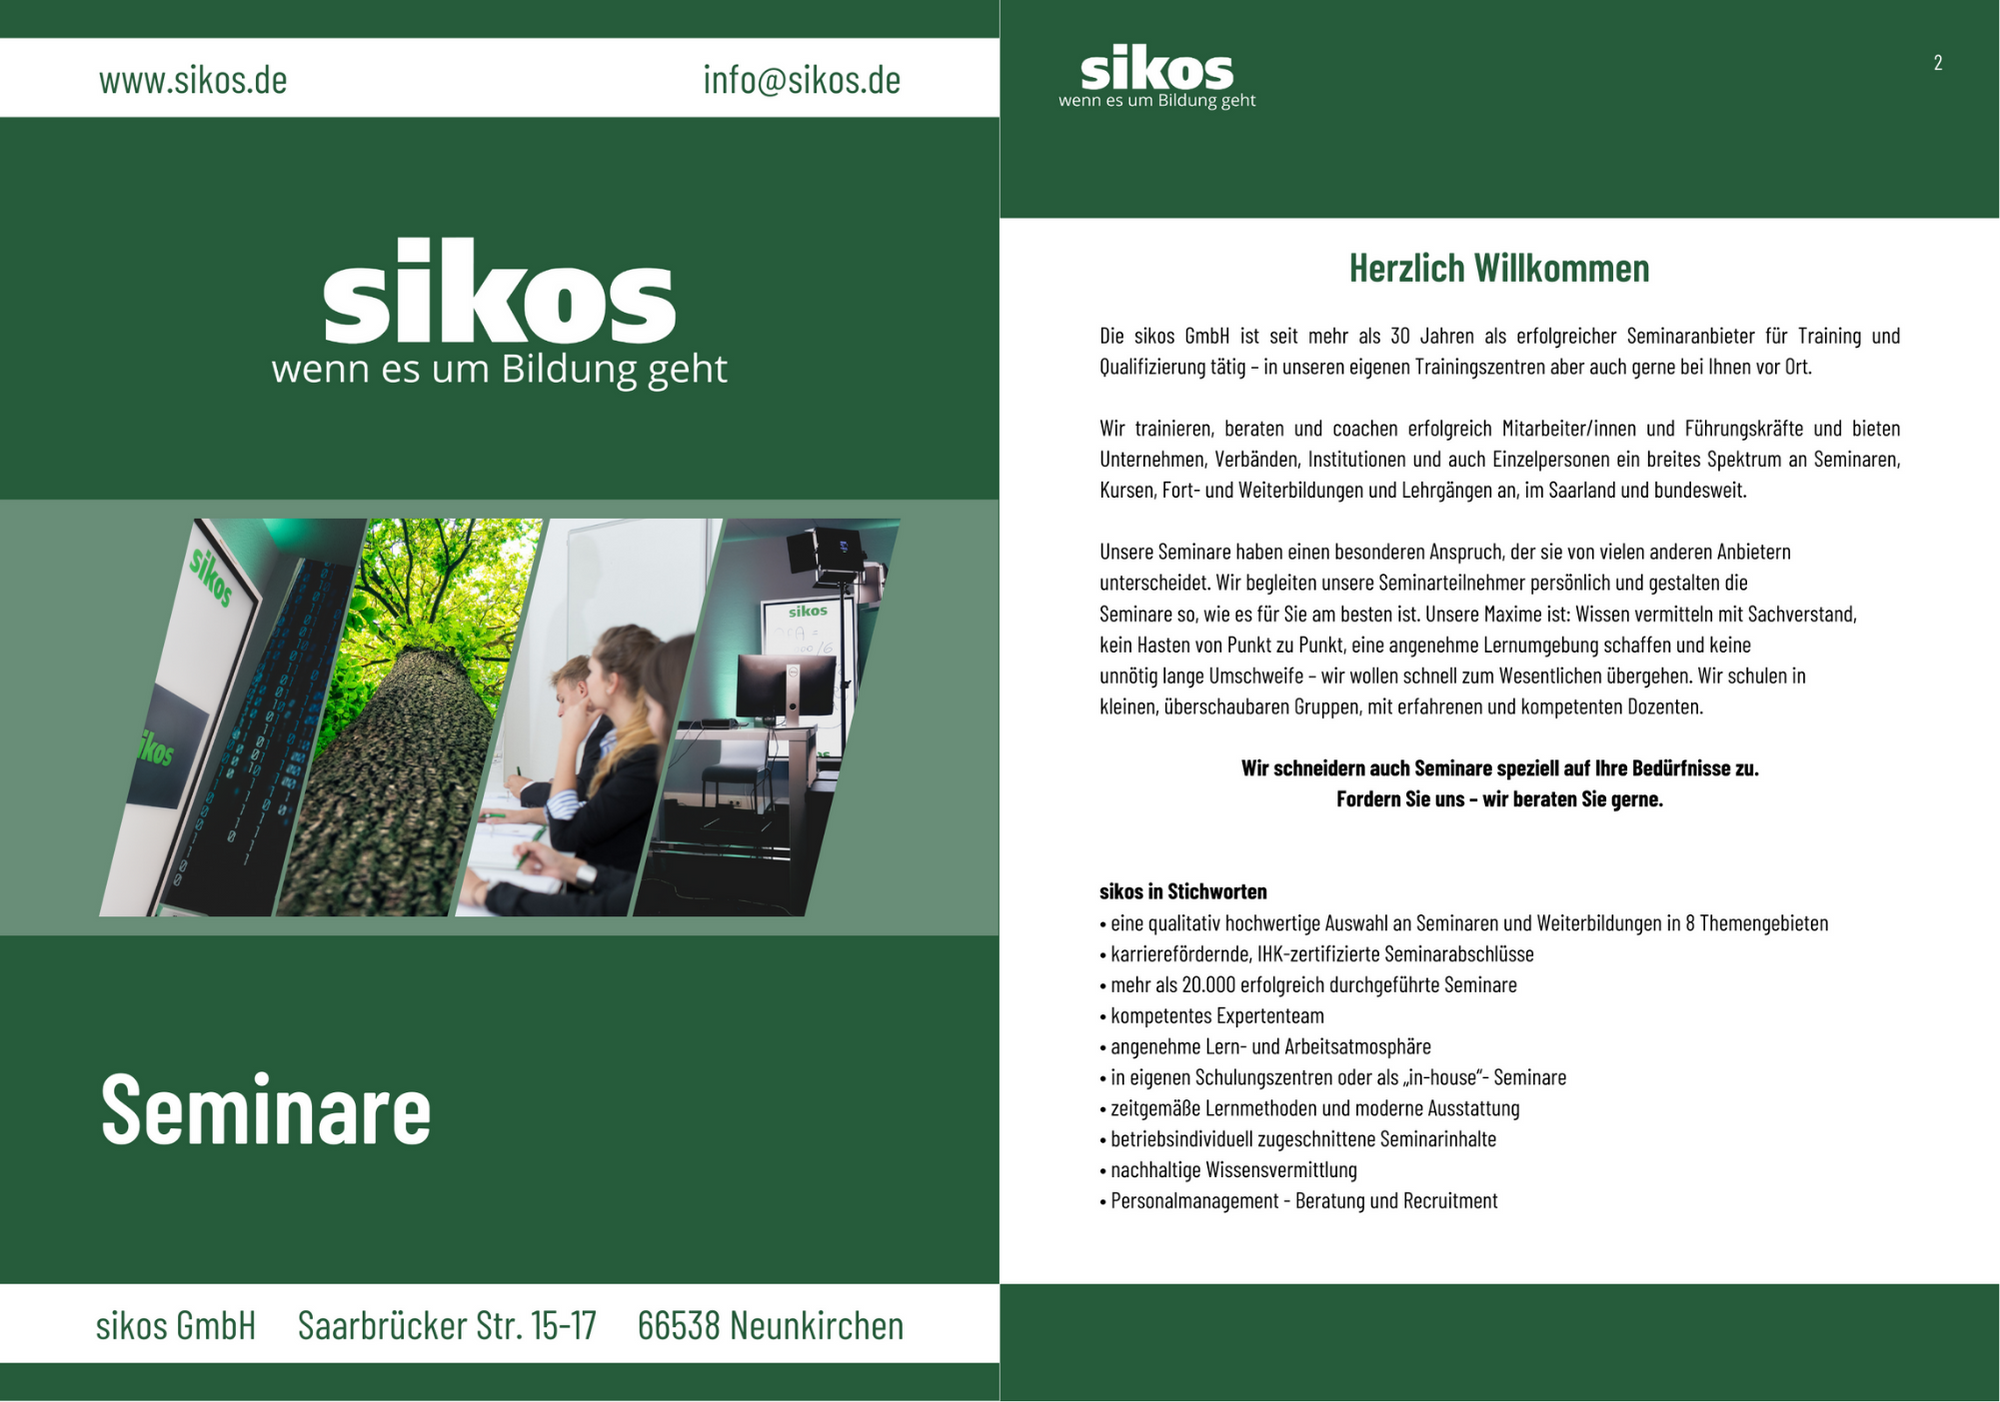 Das neue Seminarheft ist da! Das Angebot der sikos GmbH finden Se jetzt in der übersichtlichen Broschüre - auch als Druck verfügbar!